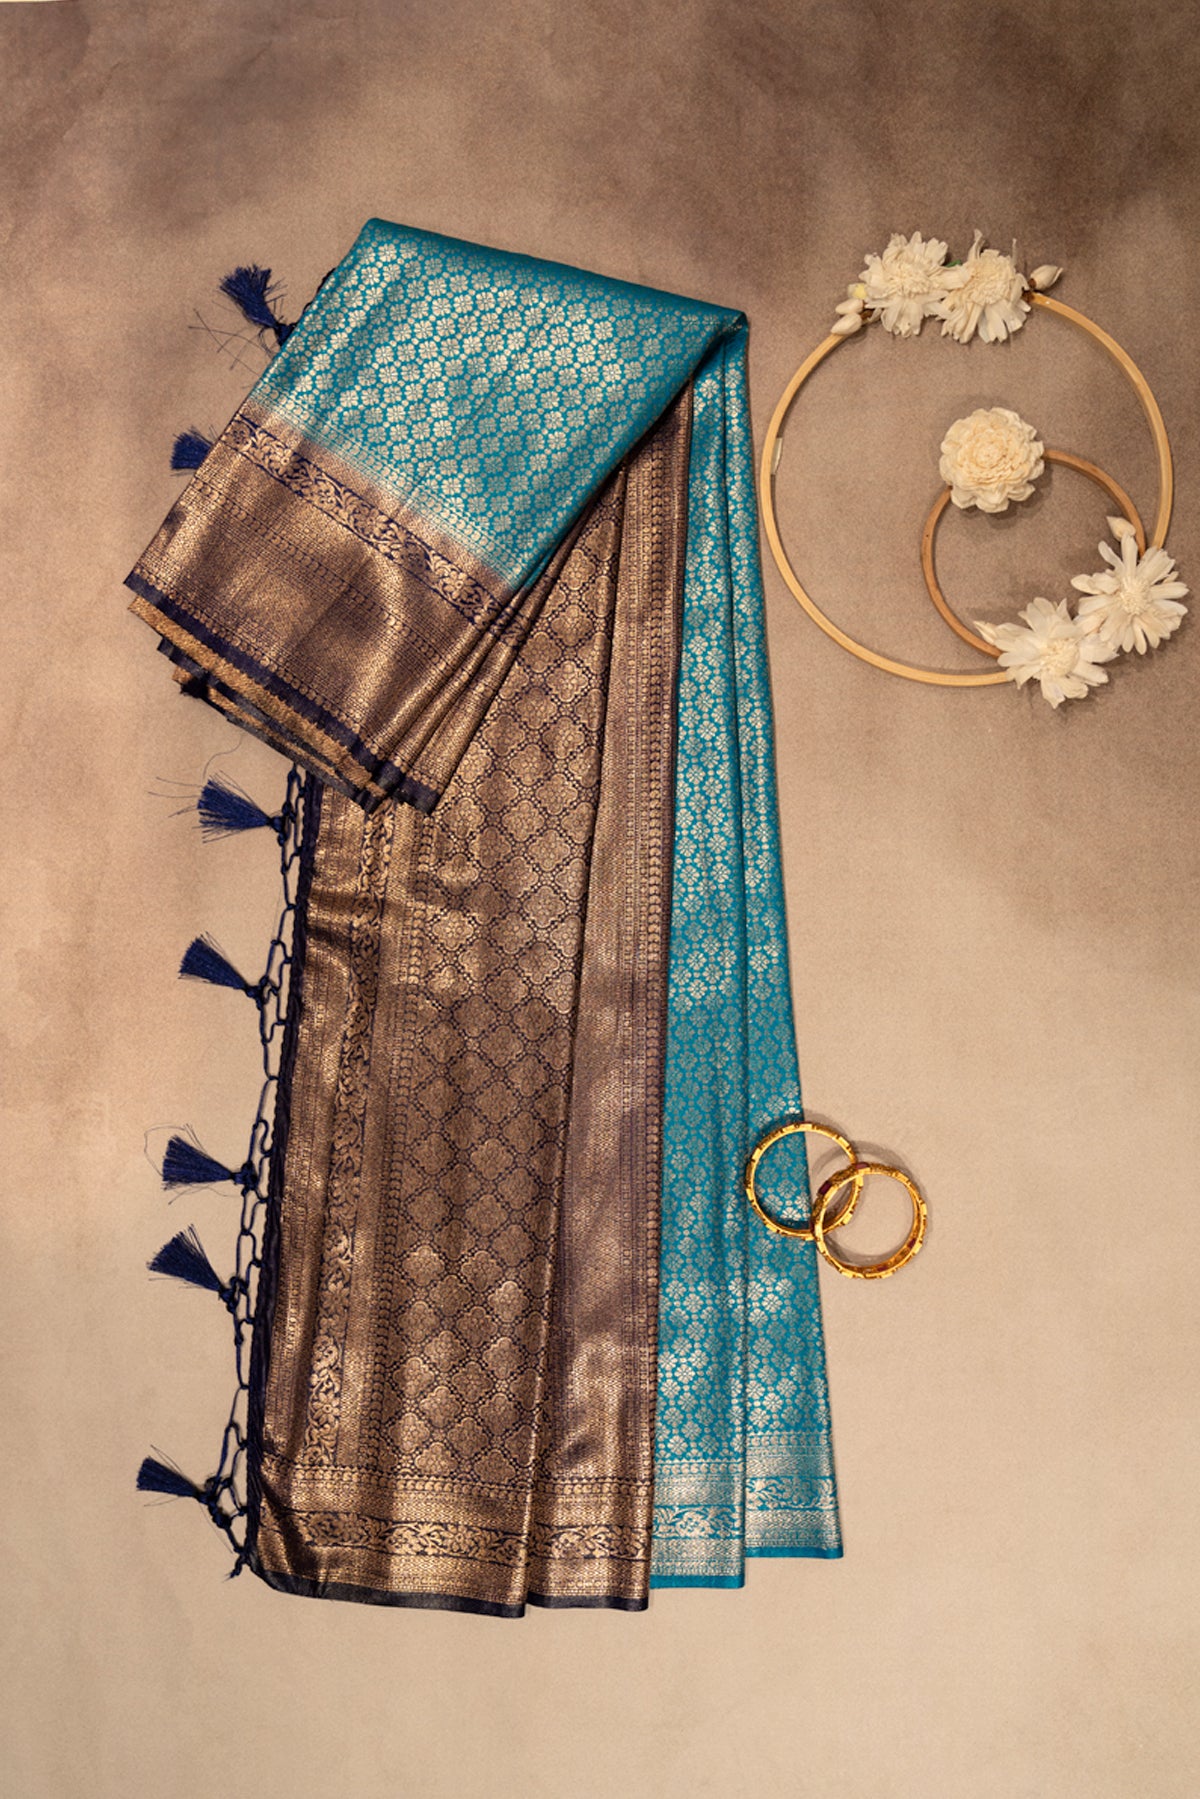 Sky blue banarasi saree with dark blue border